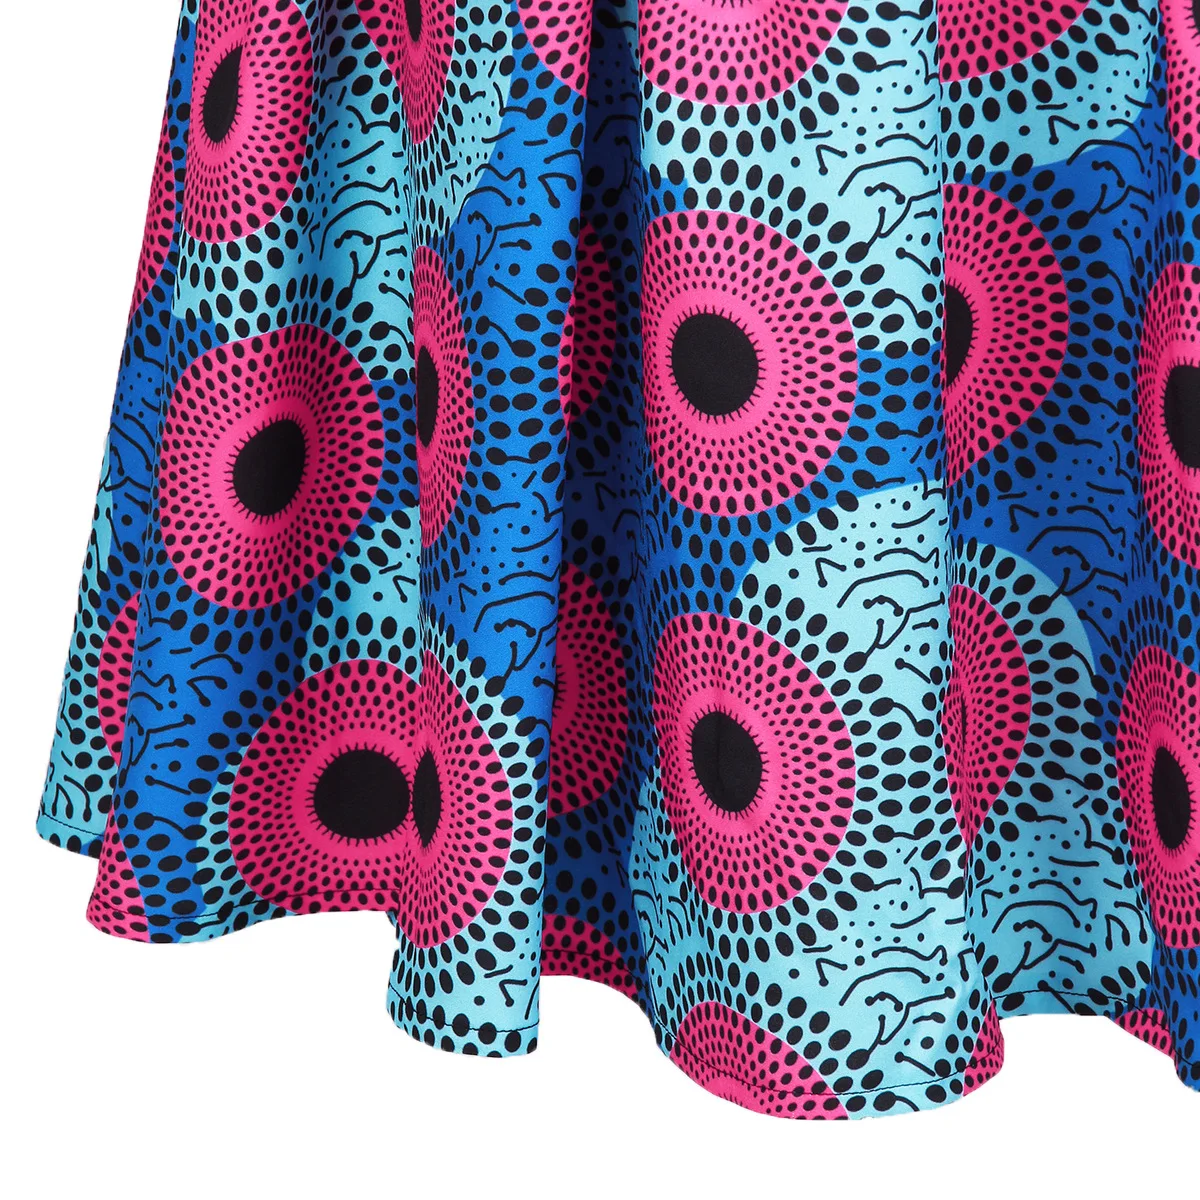 2019 Африканский костюмы традиционные платья для женщин халат платье в африканском стиле продвижение полиэстер новые пикантные модные